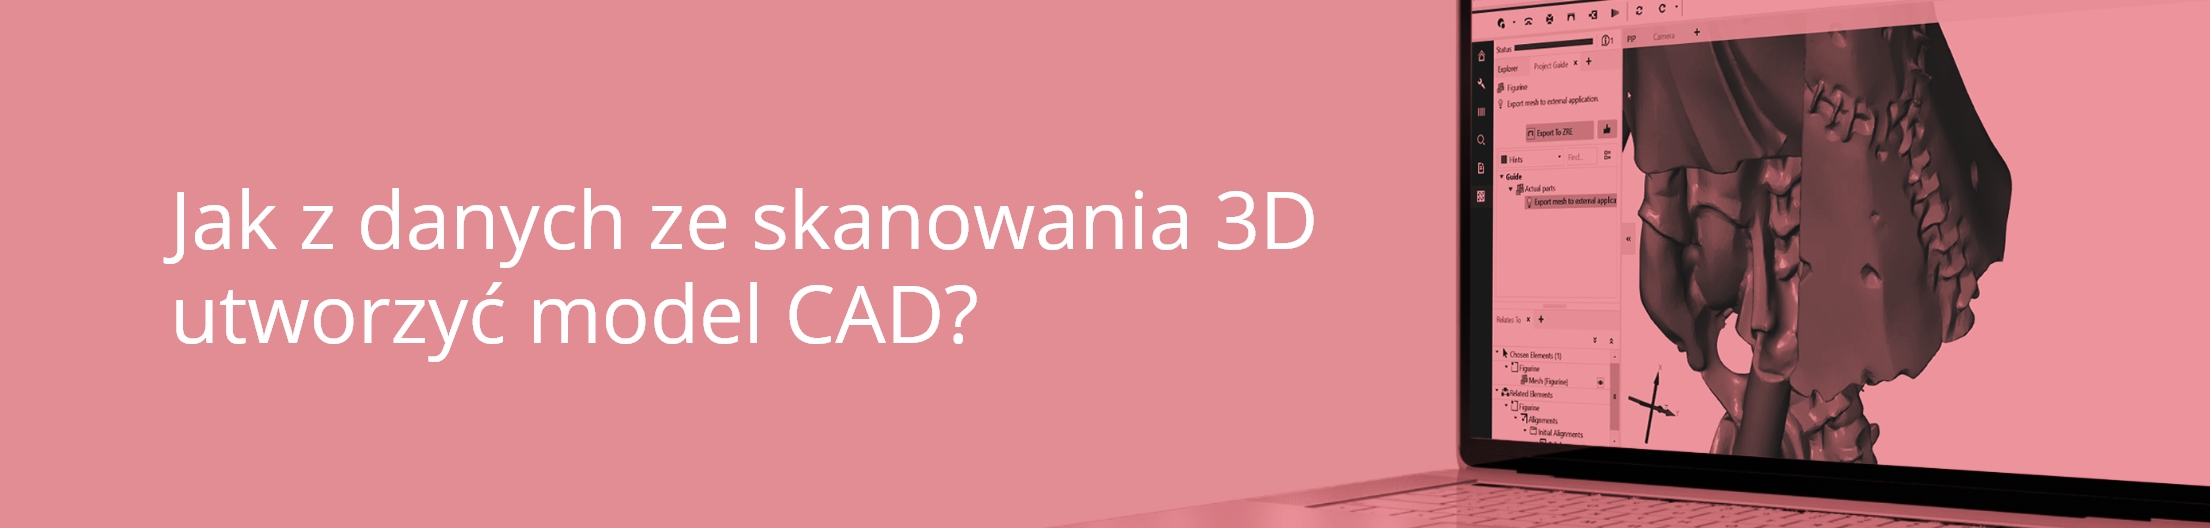 Header - Jak z danych ze skanowania 3D utworzyć model CAD